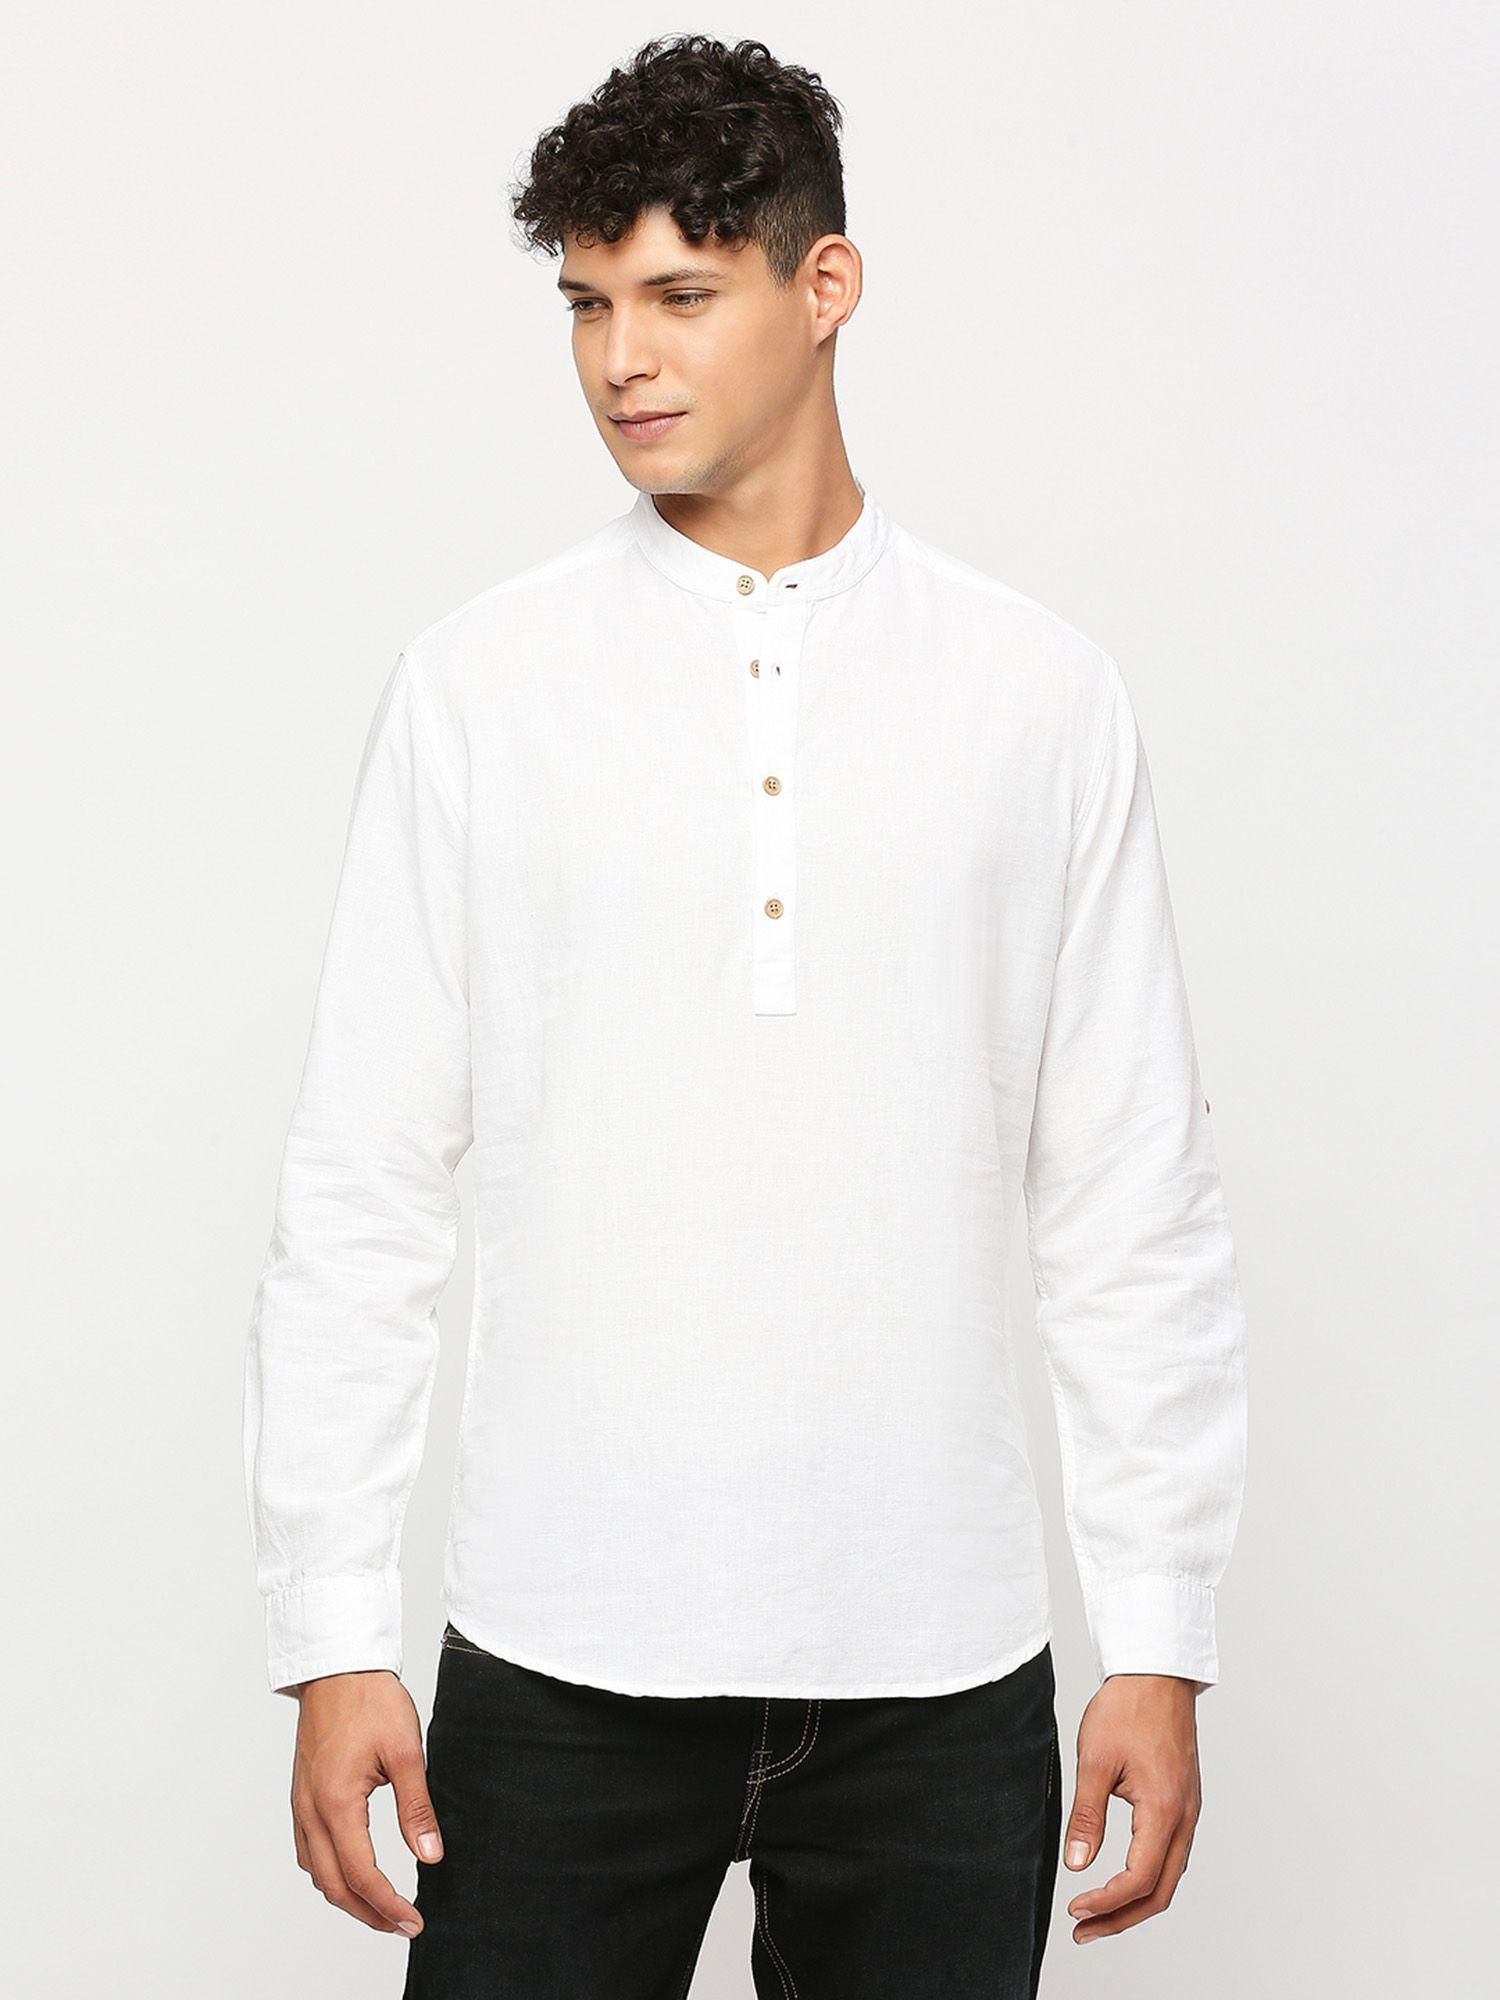 white-full-sleeves-shirt